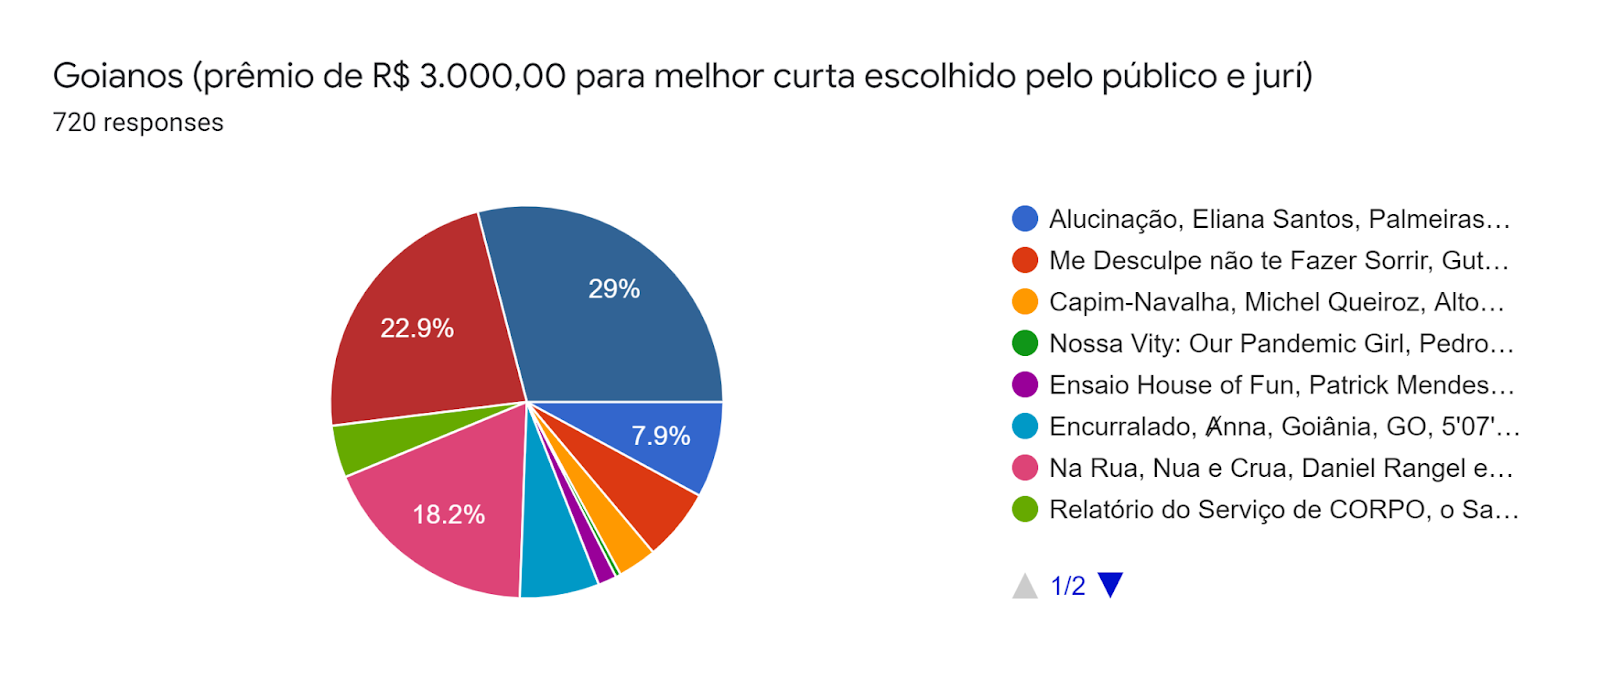 Forms response chart. Question title: Goianos (prêmio de R$ 3.000,00 para melhor curta escolhido pelo público e jurí). Number of responses: 720 responses.